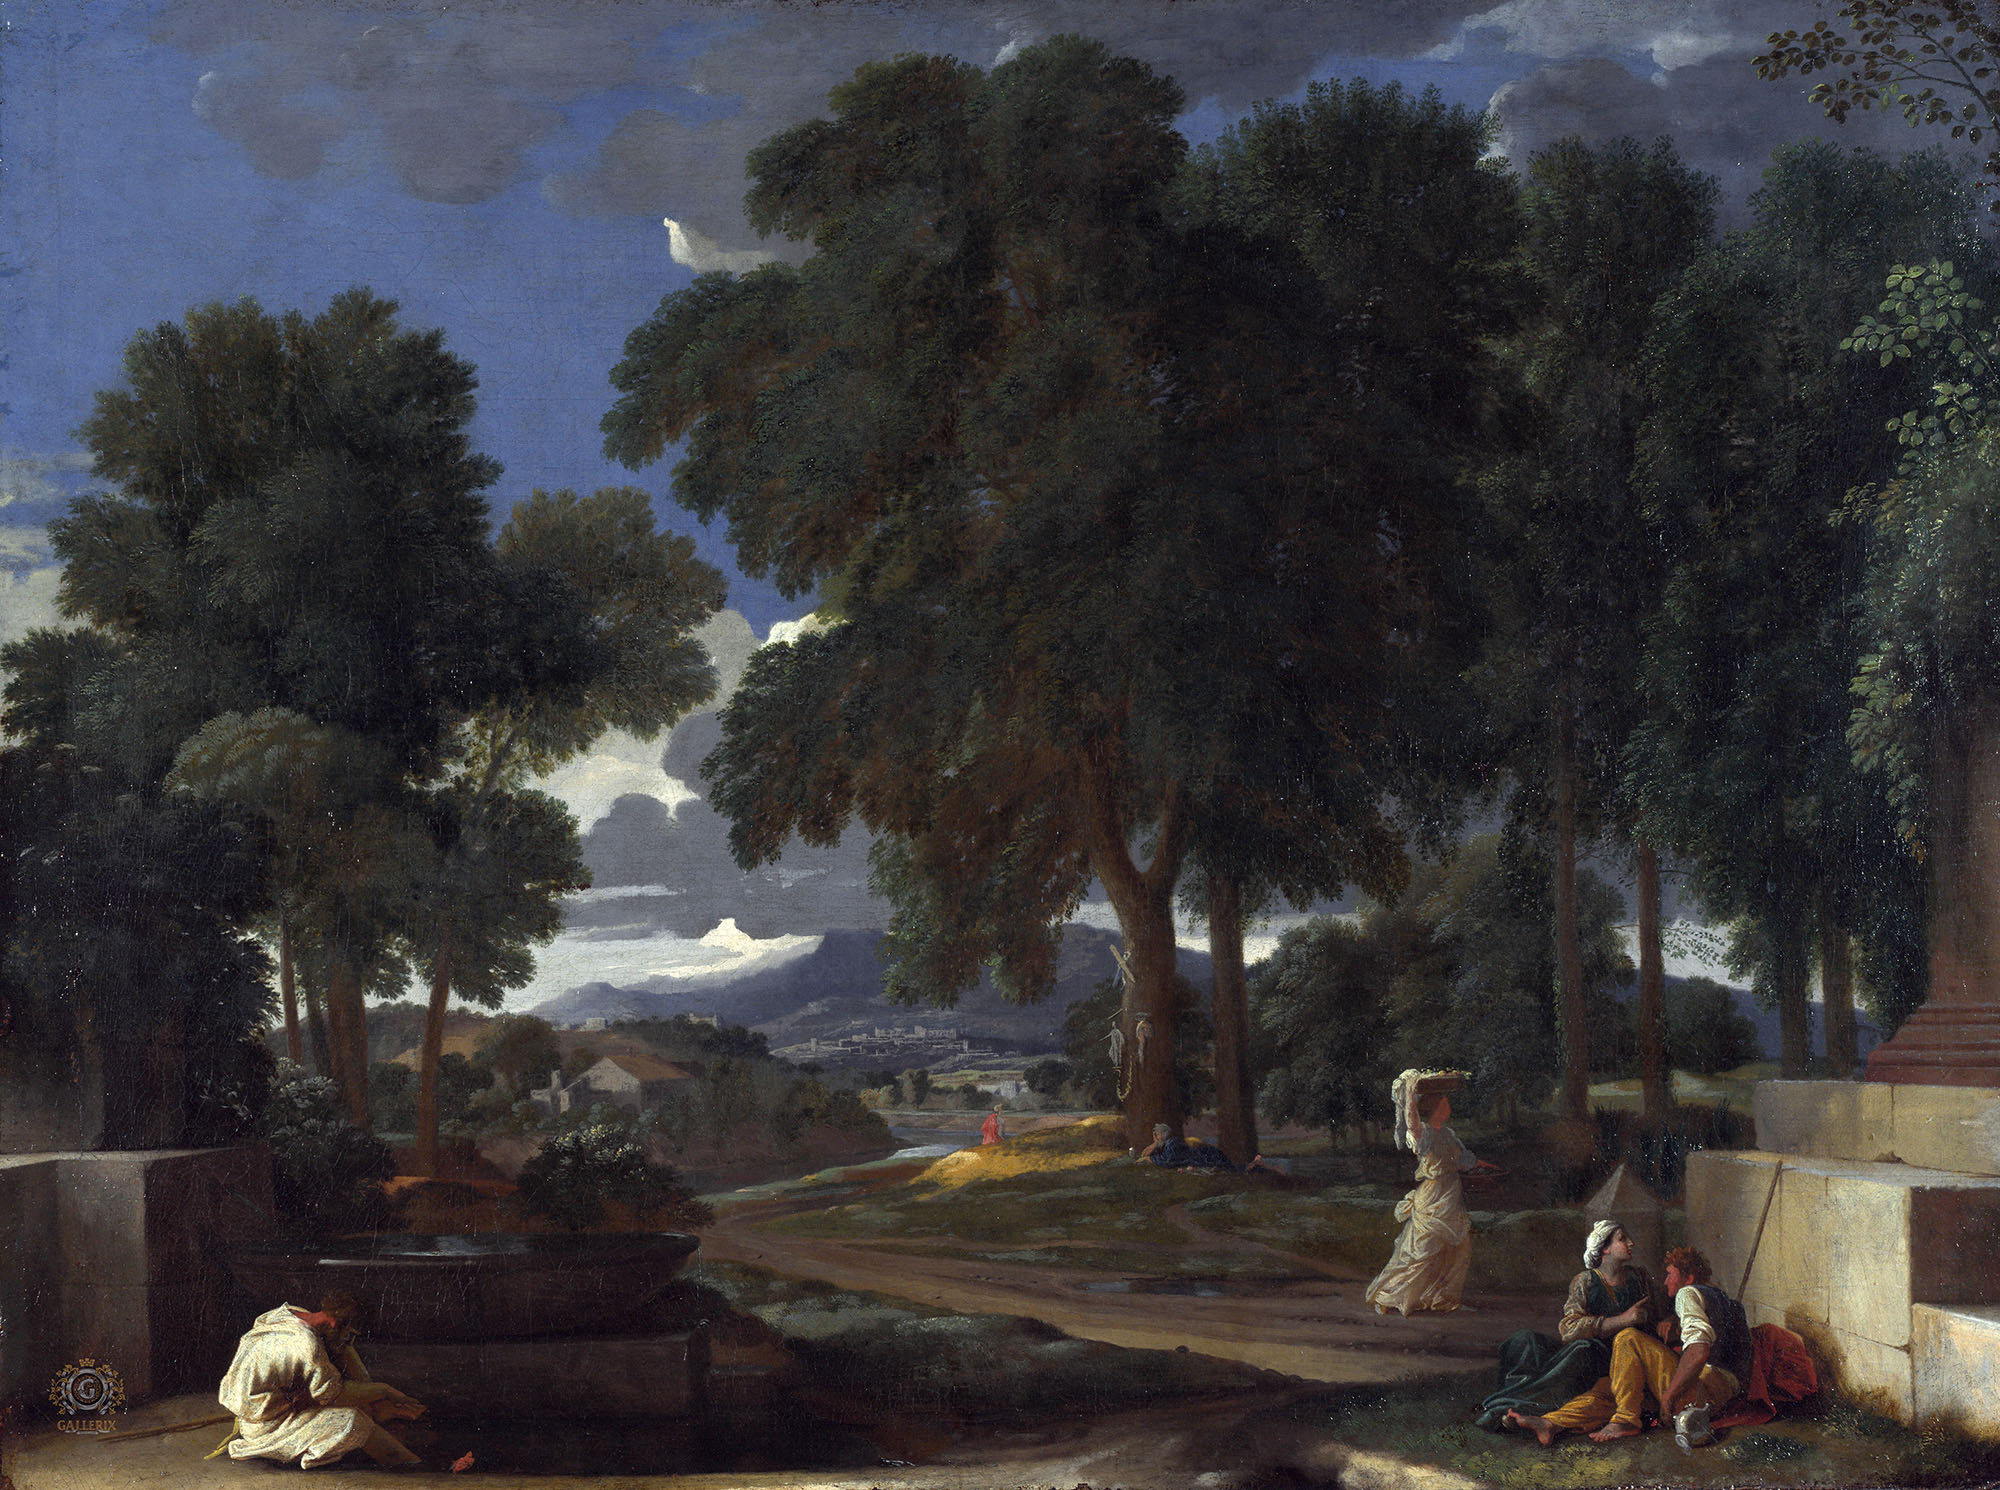 Никола Пуссен. "Пейзаж с мужчиной, моющим ноги в источнике". Около 1648. Национальная галерея, Лондлн.